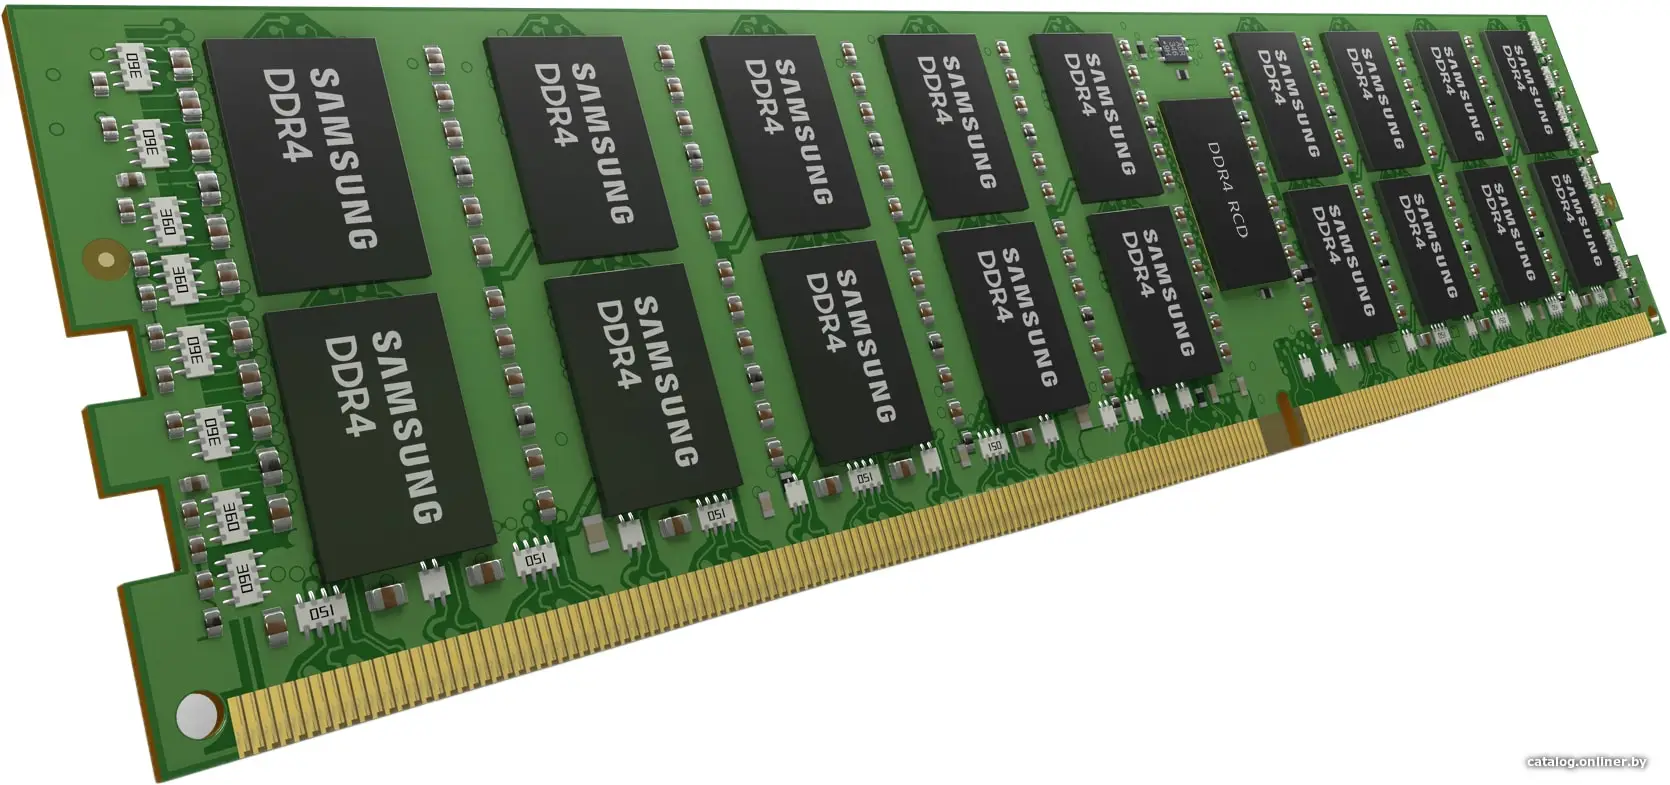 Купить Оперативная память Samsung DDR4 64Gb DIMM ECC Reg PC4-25600 CL21 3200MHz (M393A8G40BB4-CWE), цена, опт и розница